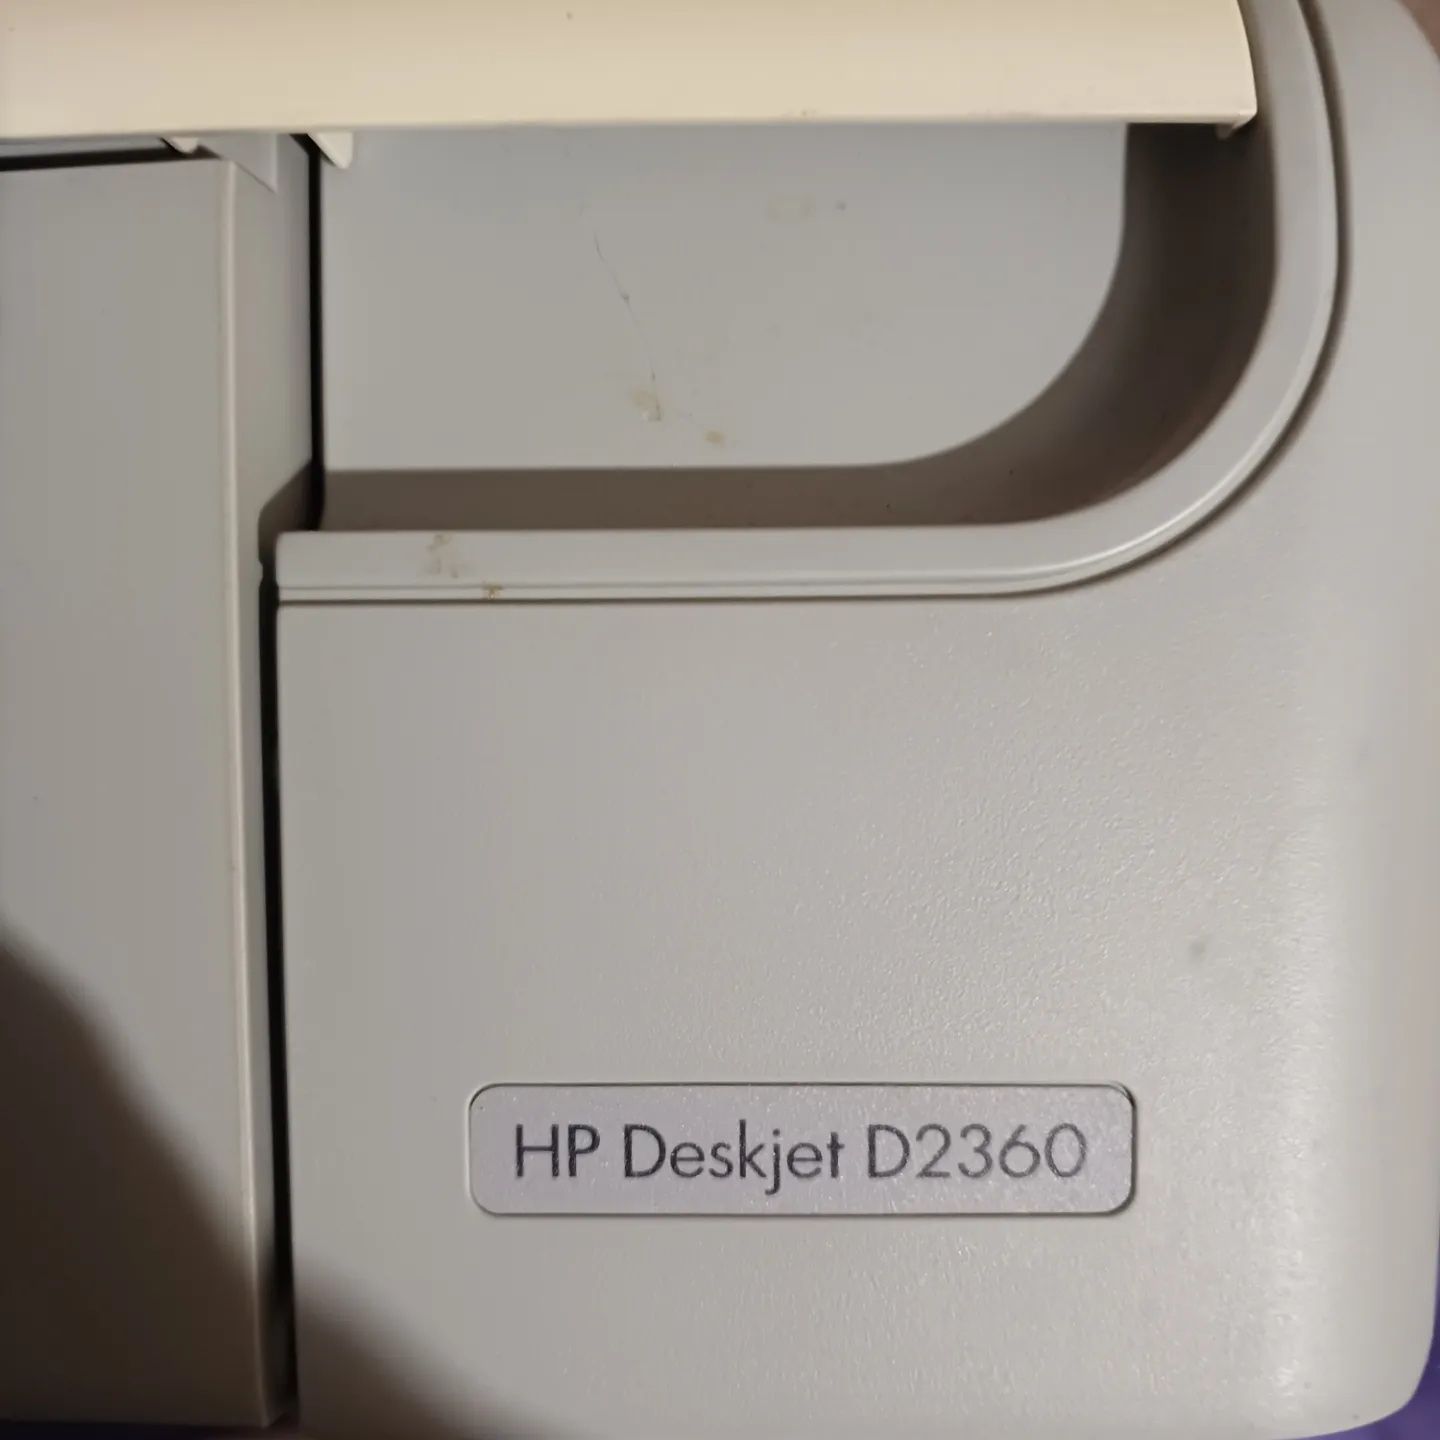 Принтер HP Deskjet D2360
Шнур в наличии. Стоял